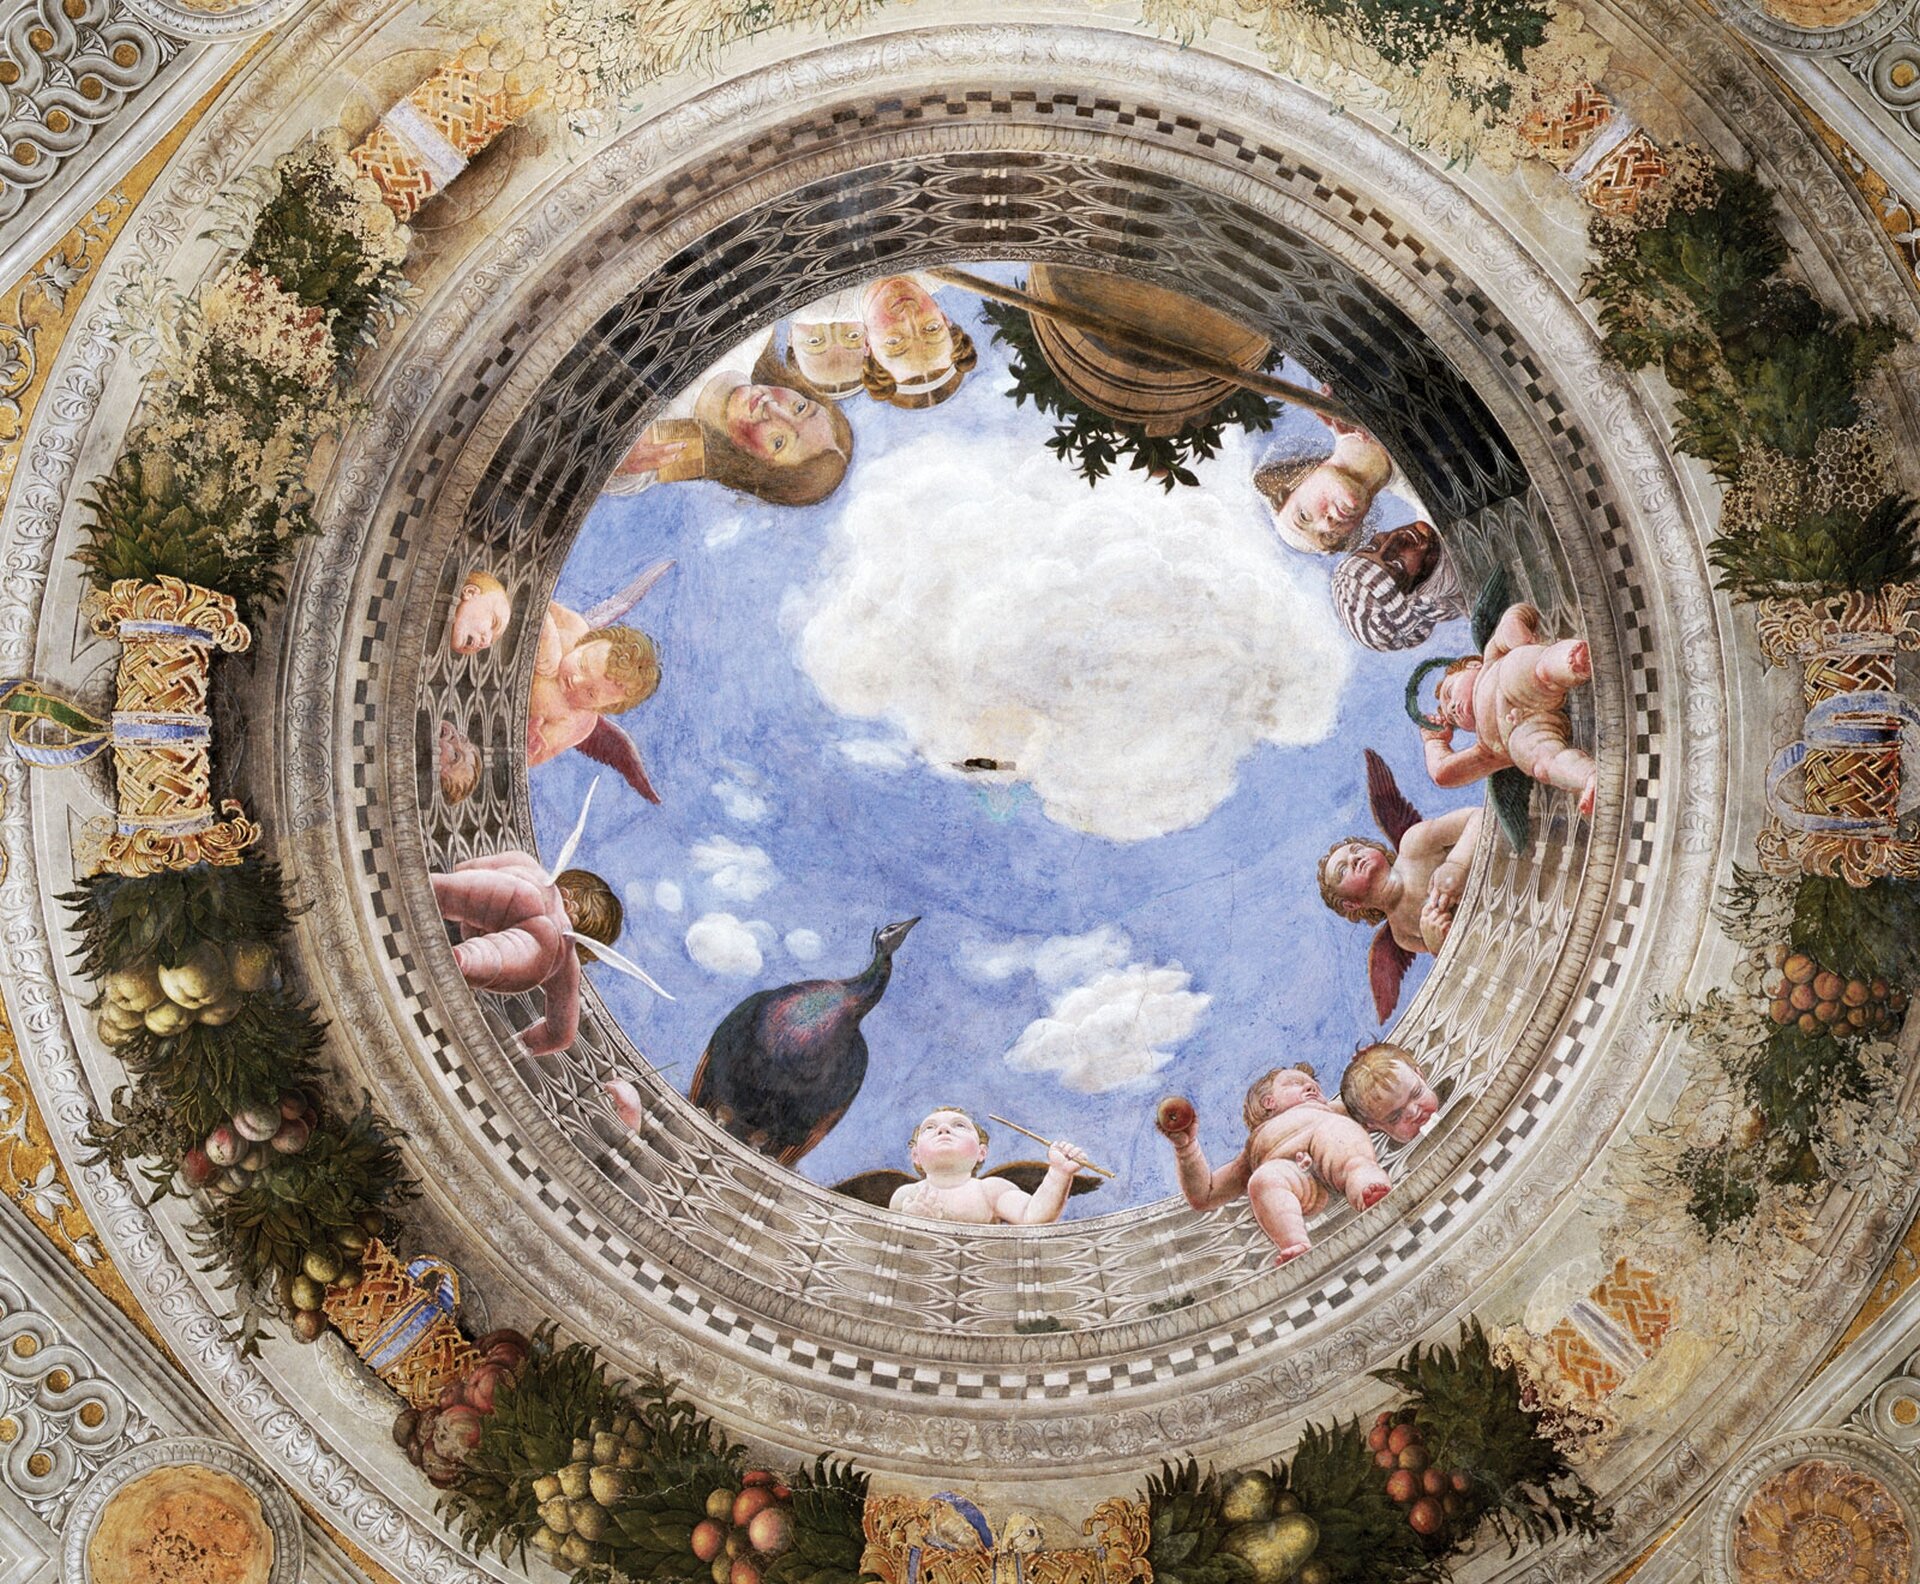 Ilustracja przedstawia pracę Andrea Manegna Oculus sklepienia w Camera degli Sposi. Fresk przedstawia spoglądające z góry postacie. Wśród nich widać dzieci (amory), ptaka, oraz osoby starsze. Pod postaciami widoczne są owoce. Nad postaciami widoczne jest niebieskie niebo z białymi chmurami.